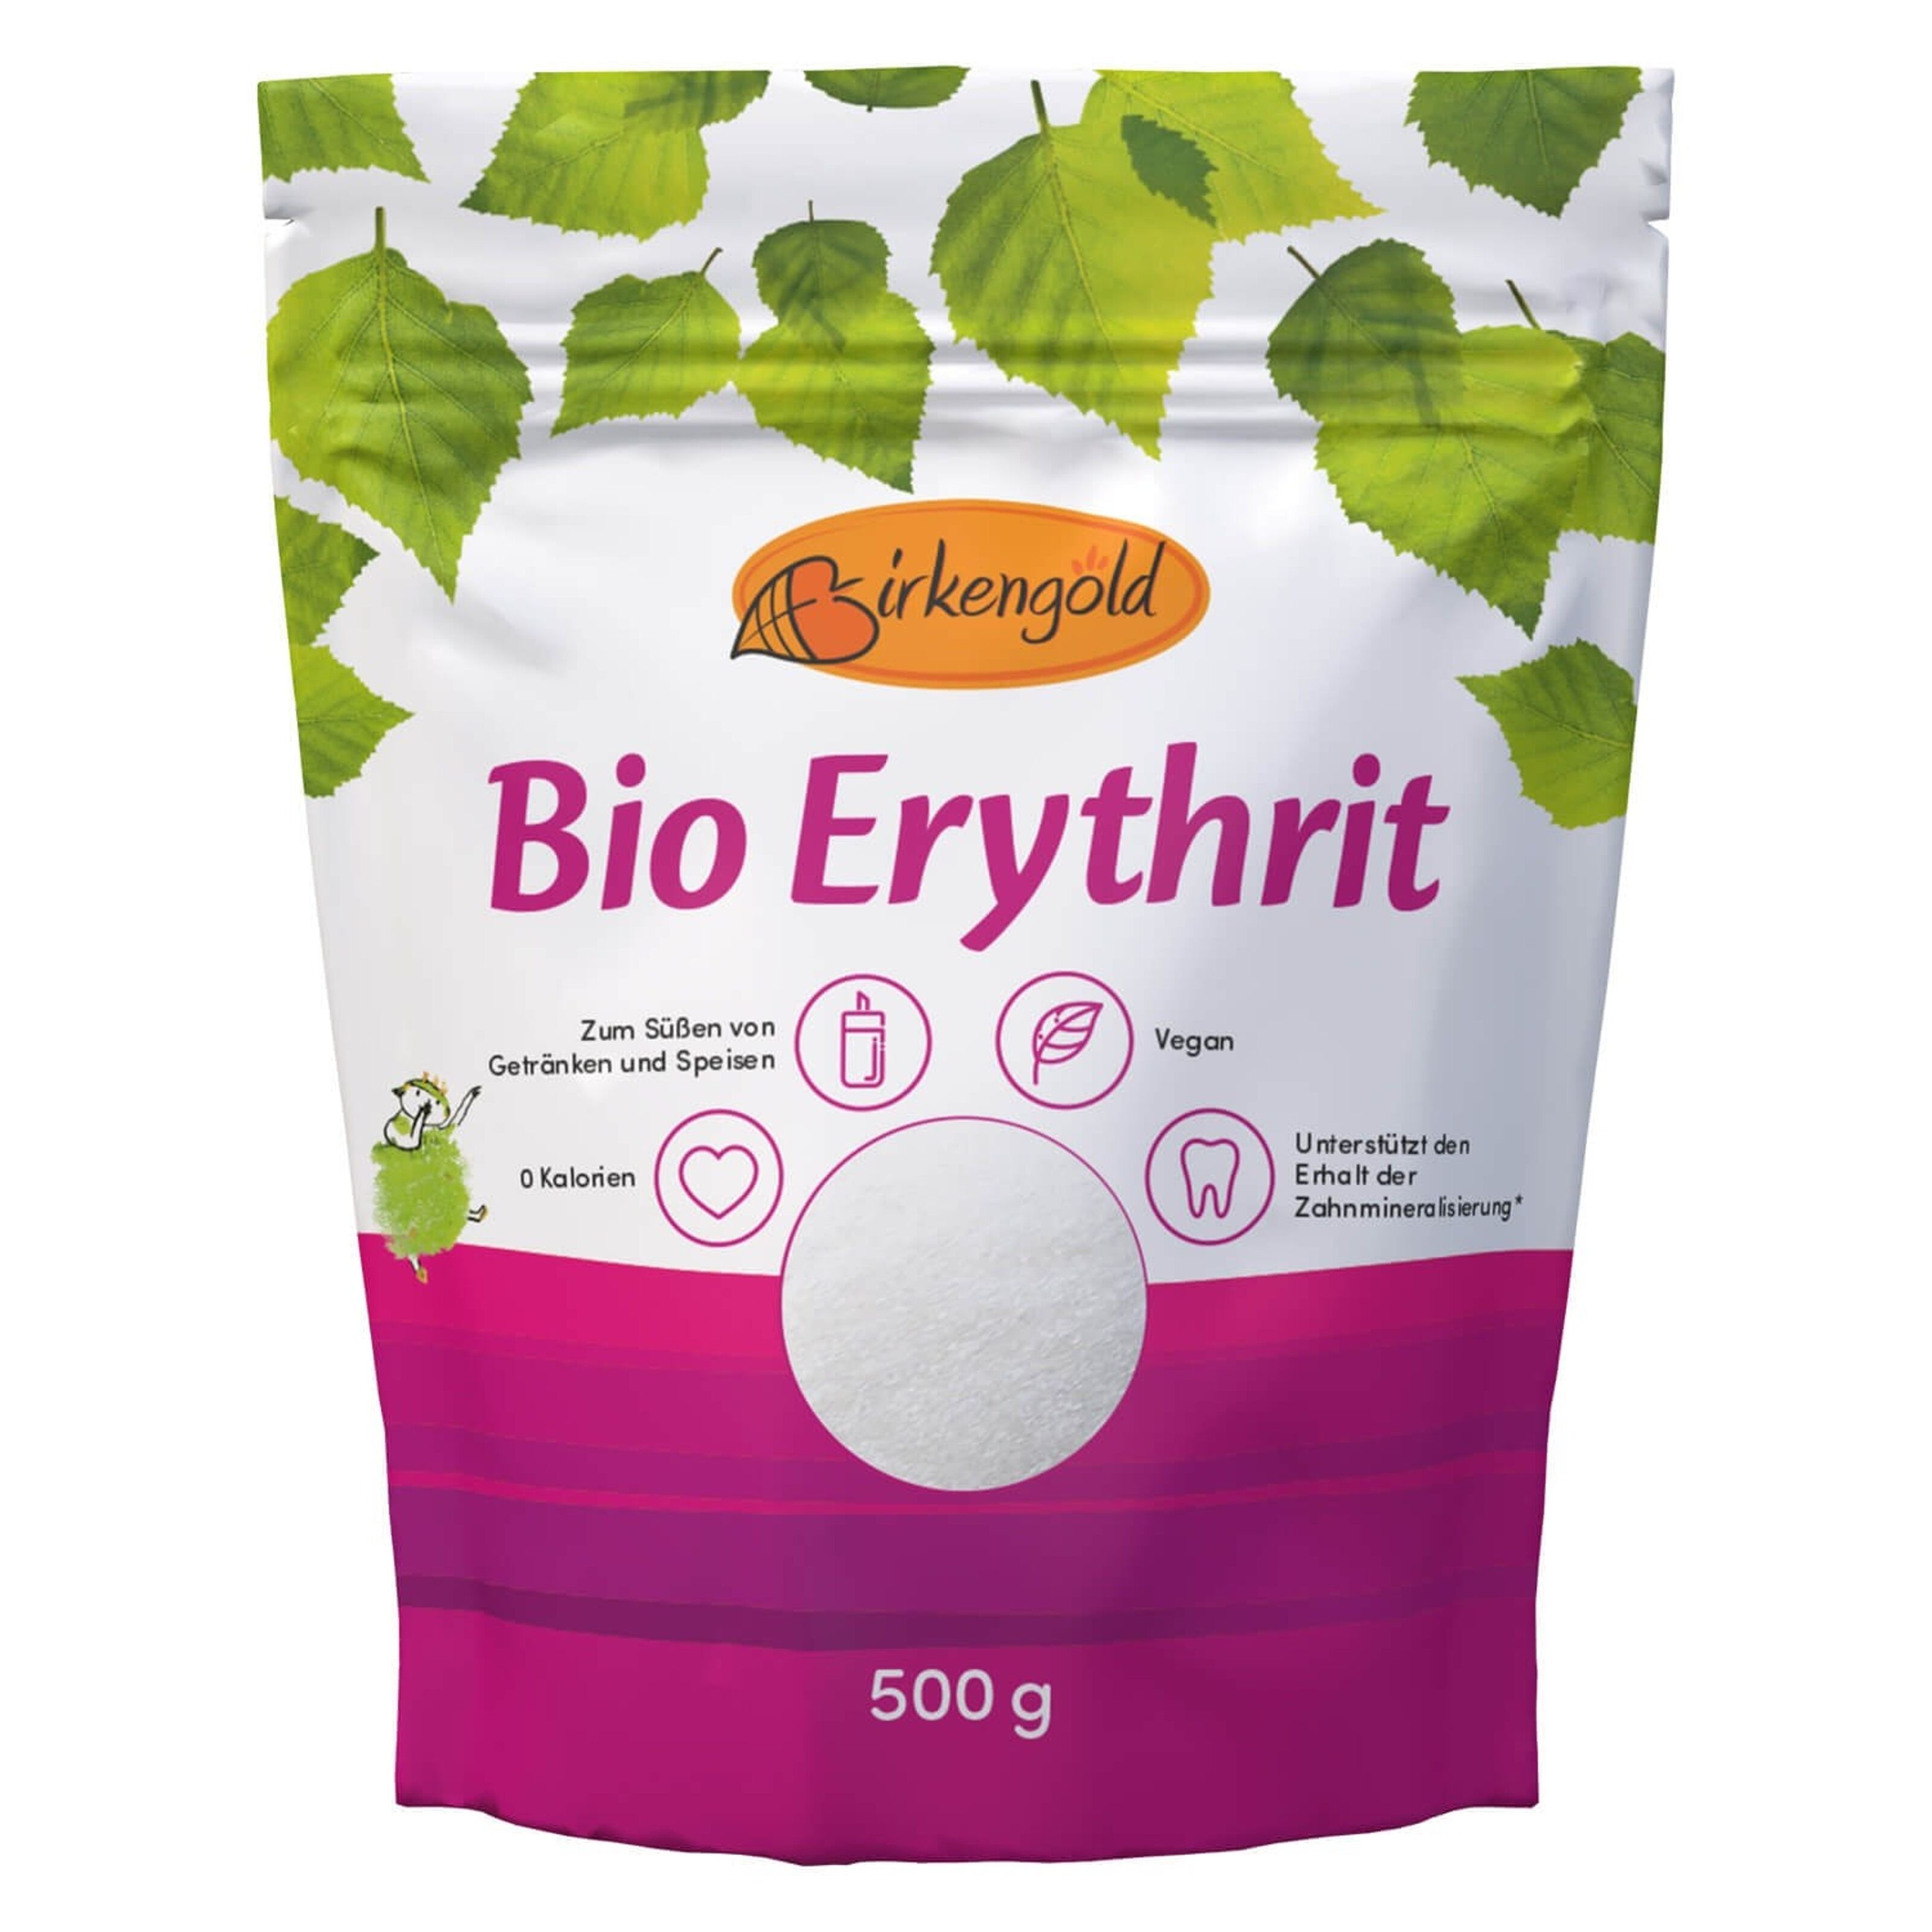 BIO Erythritol / Erythrit